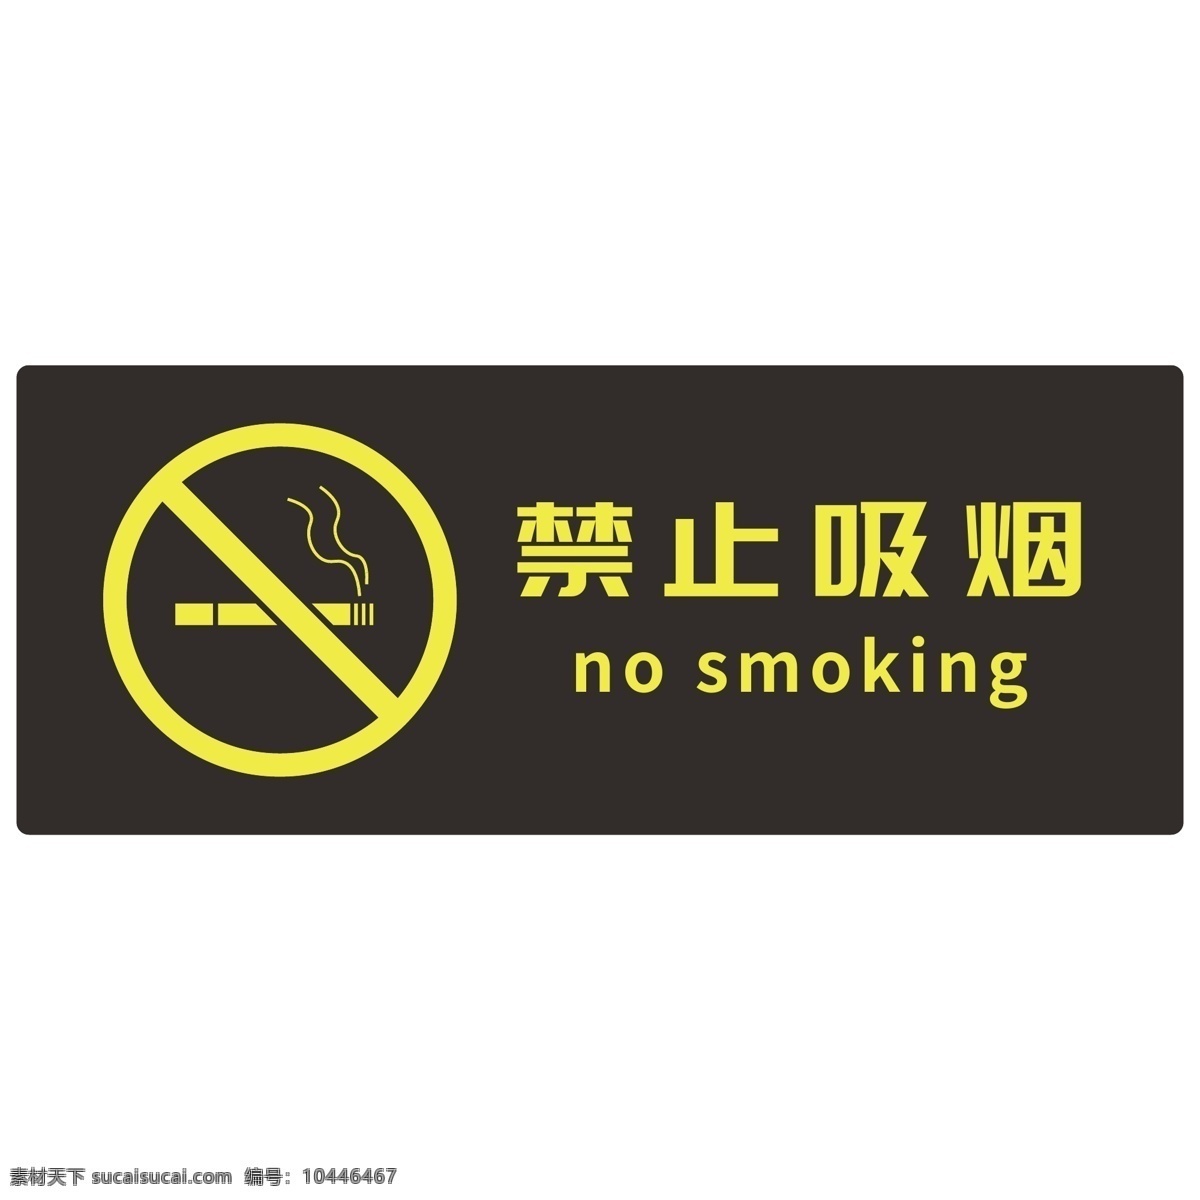 公共 场合 禁止 吸烟 标识 公共指示牌 禁止吸烟 设计元素 图标元素 平面图标